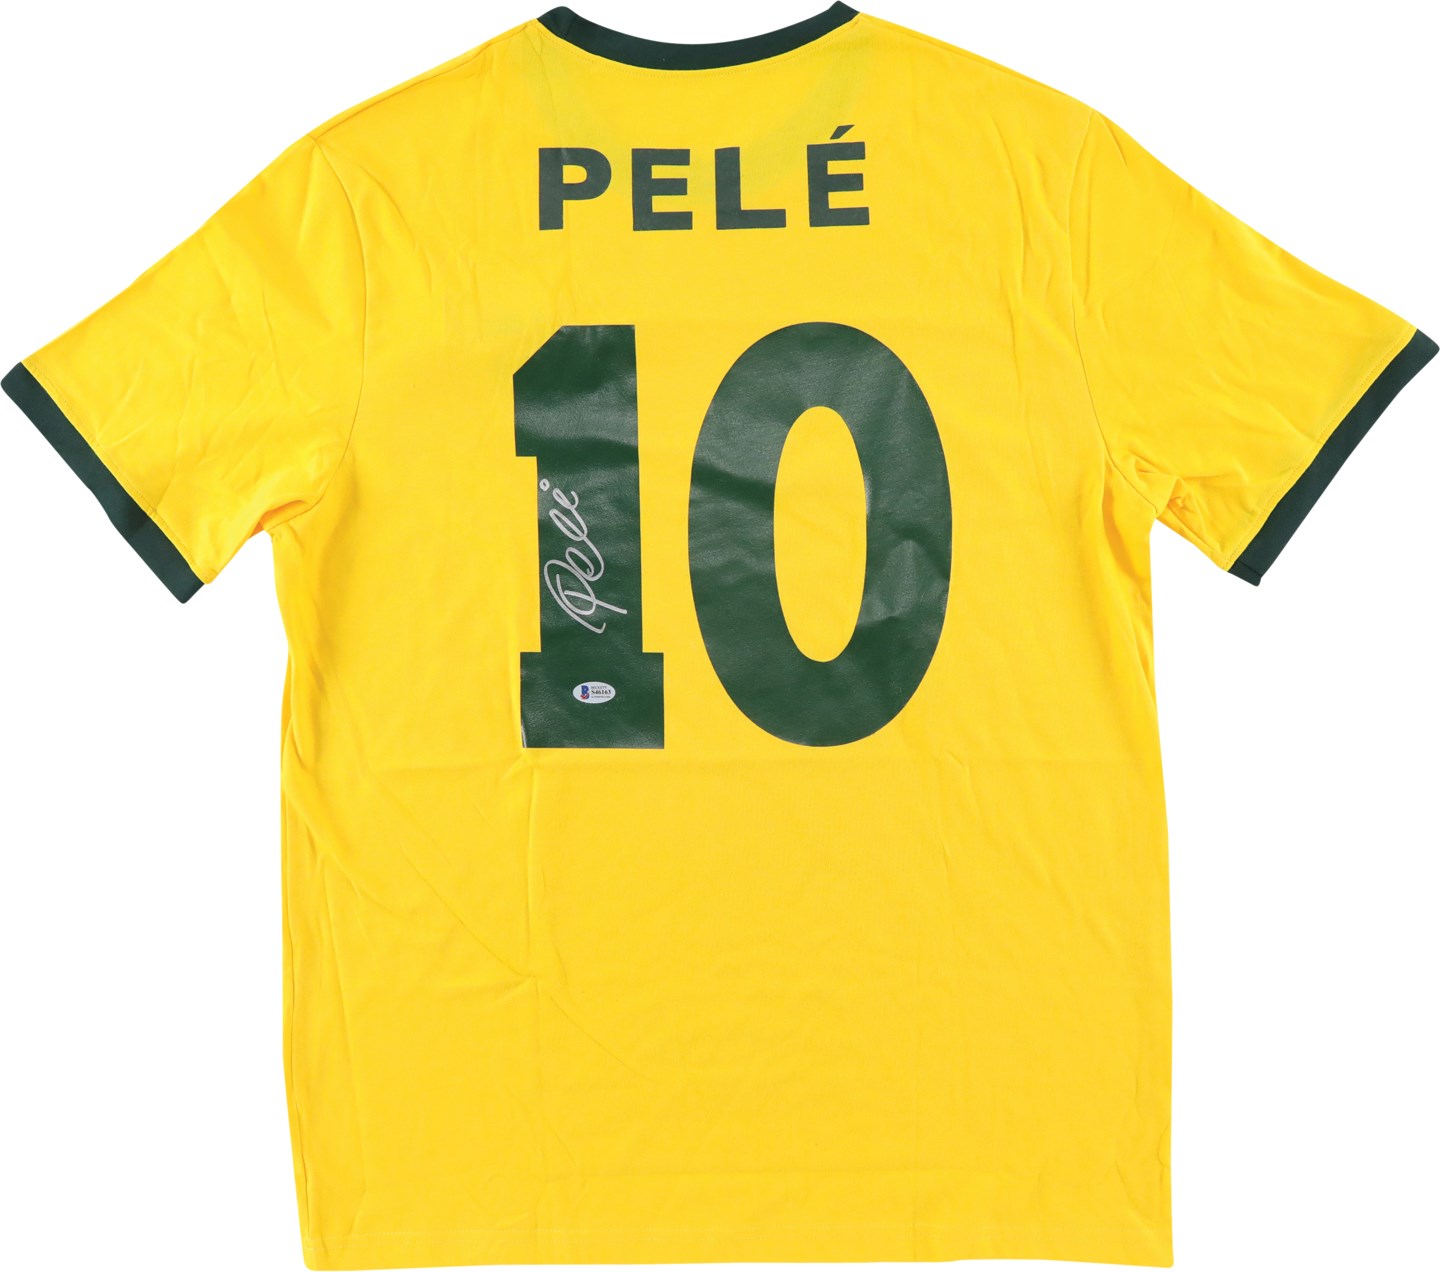 - Pele Signed Brazil Jersey (Beckett)